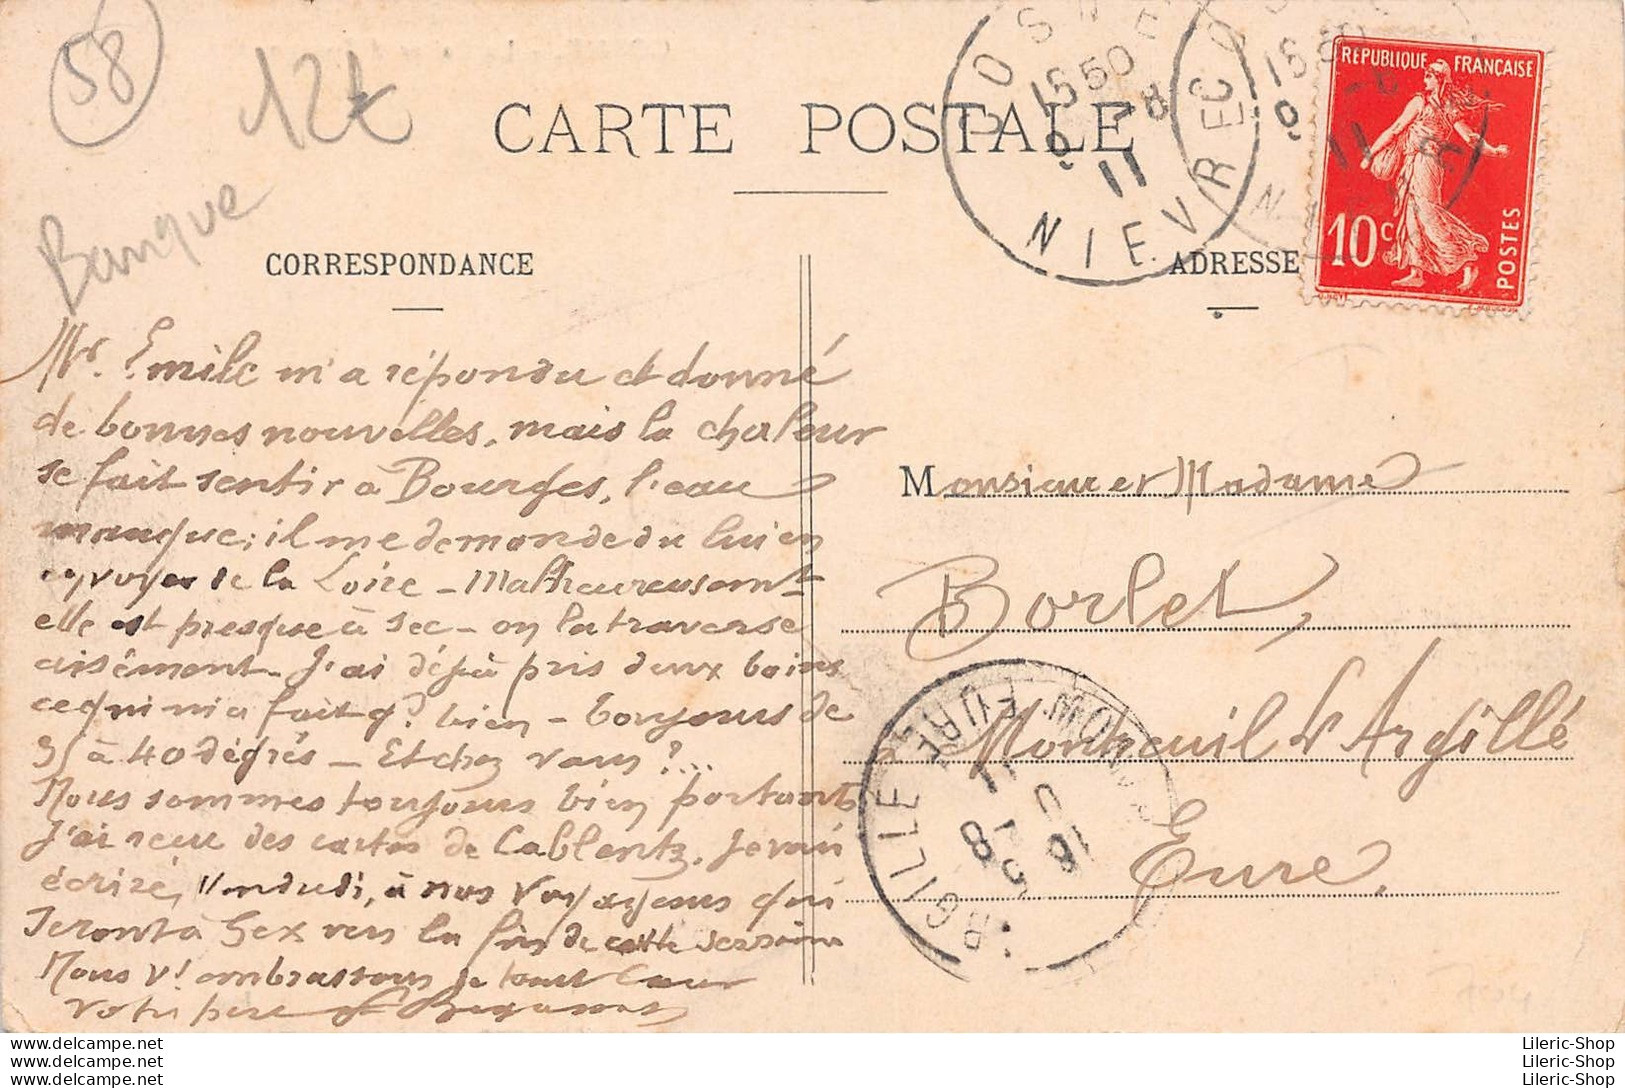 COSNE (58) - La Caisse D'Épargne En 1911 - Didier éditeur, Cosne - Cpa - Cosne Cours Sur Loire